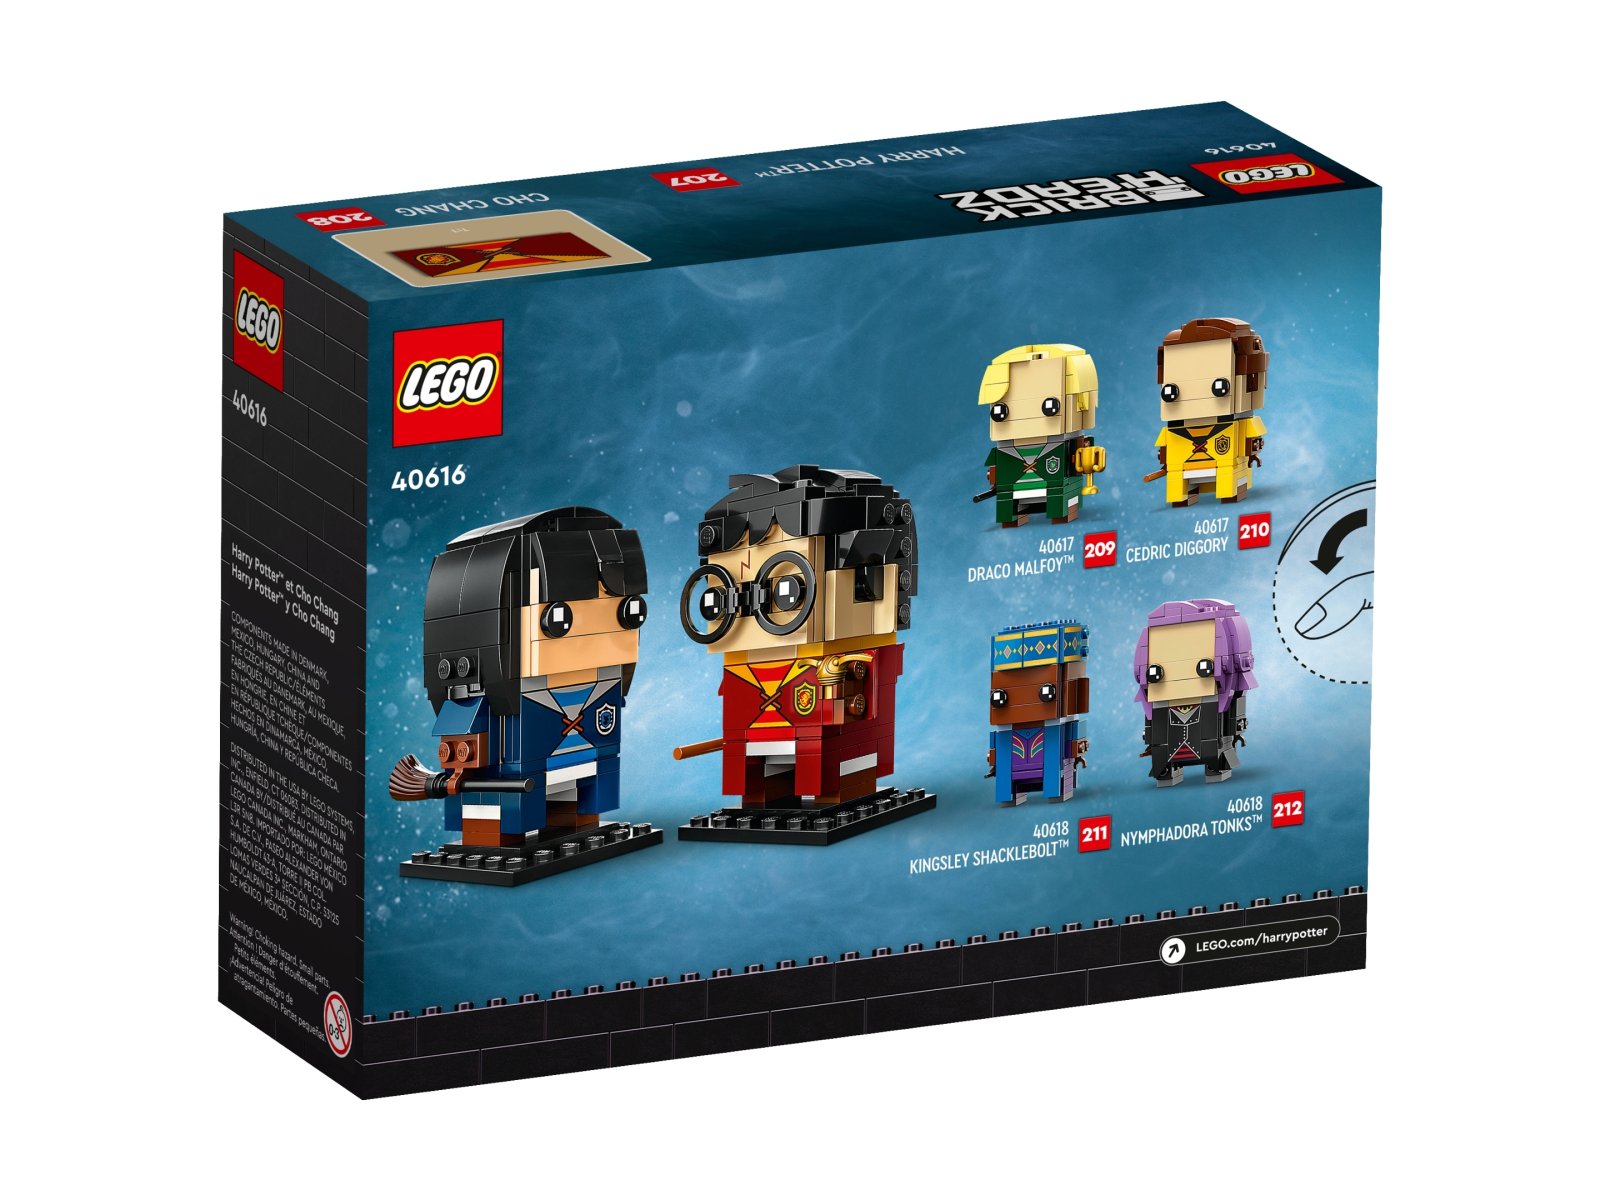 LEGO 40616 BrickHeadz Harry Potter™ i Cho Chang